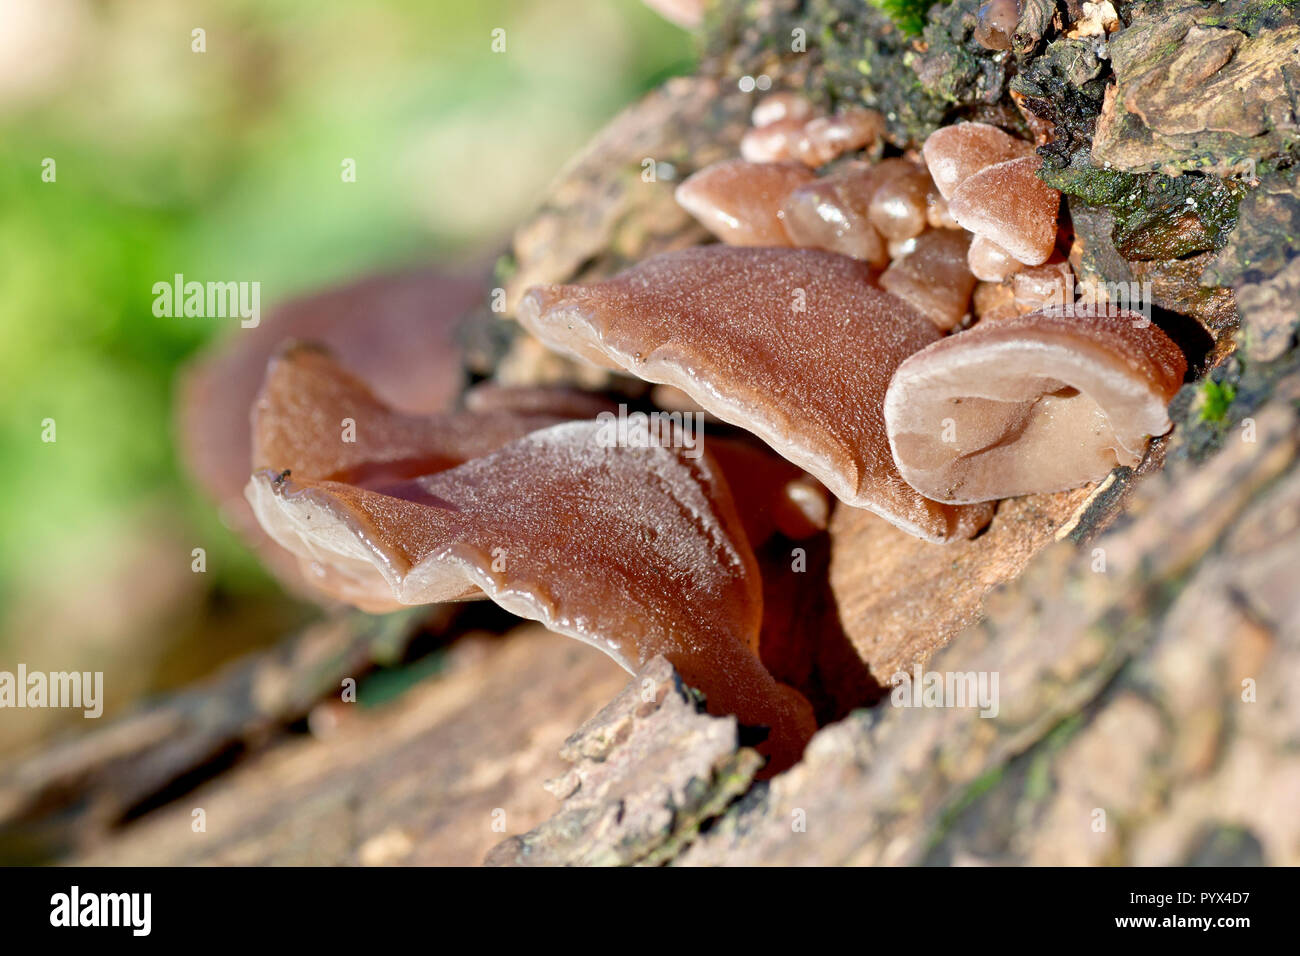 Gelee-Ohr-Pilz (hirneola oder auricularia auricula-judae), Nahaufnahme der Fruchtkörper des Pilzes, früher als Judenohr bekannt. Stockfoto